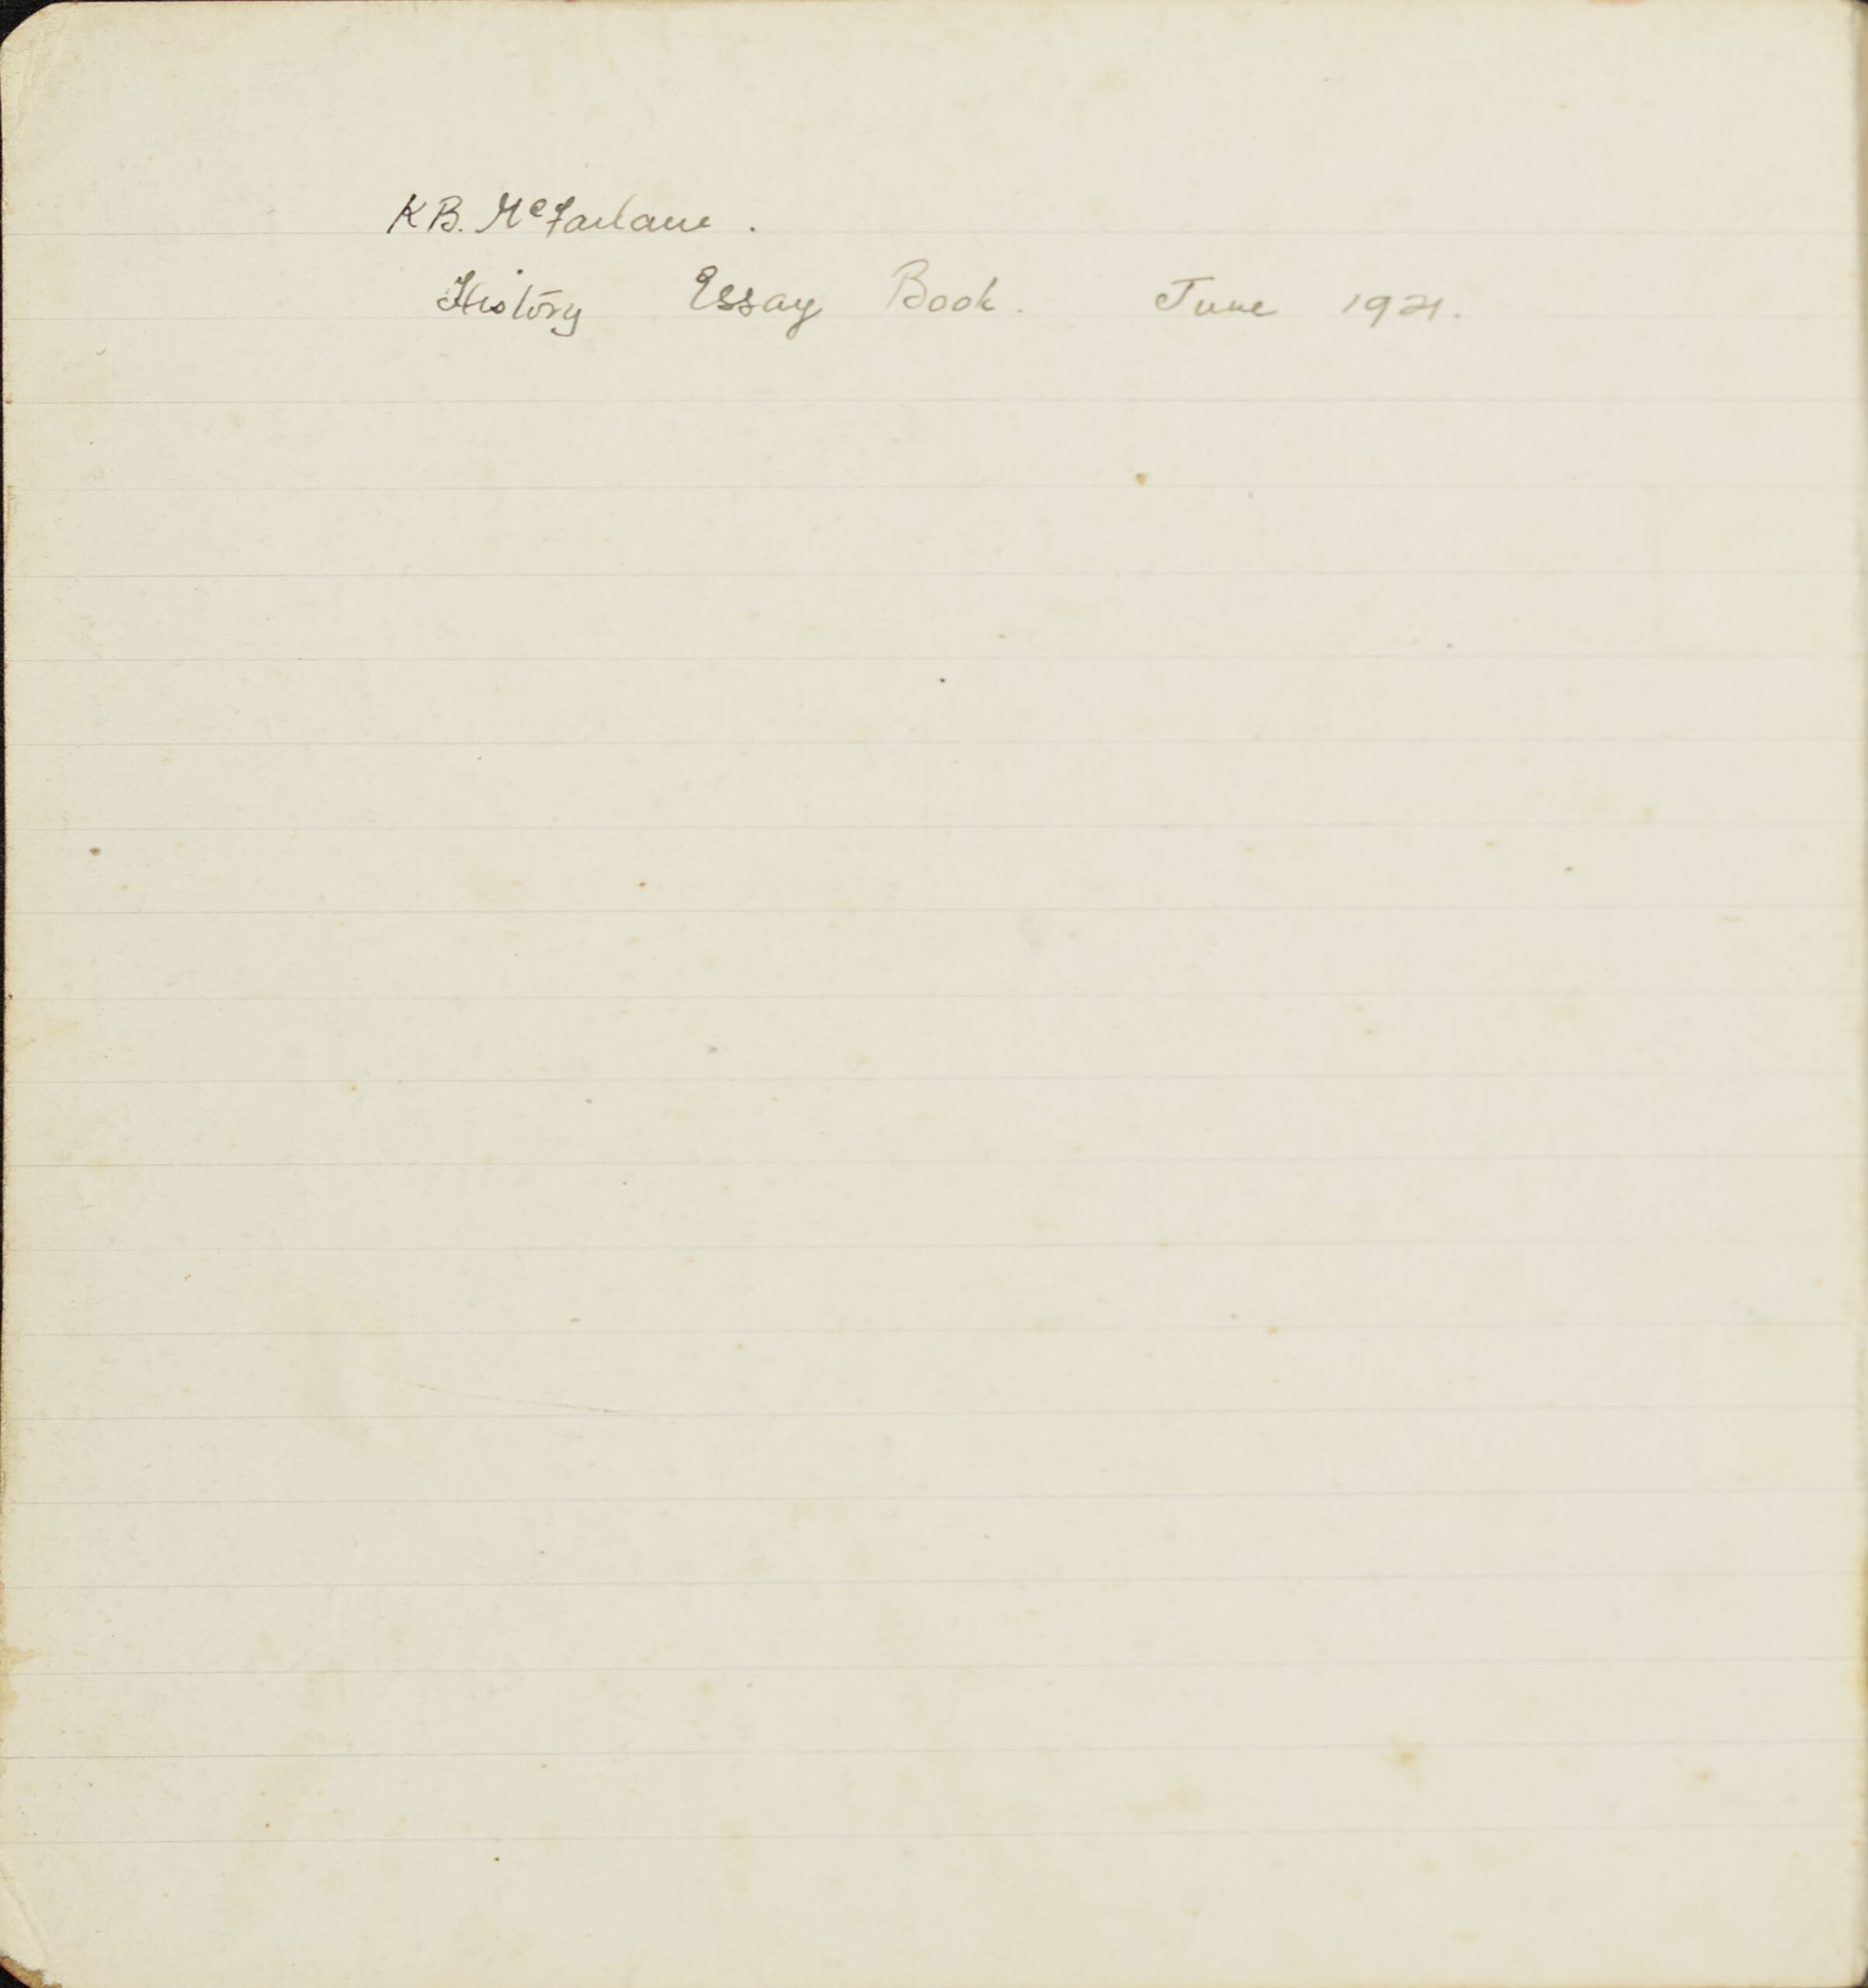 Inside cover of K.B. McFarlane's school notebook. Inside he has written in pencil "K.B. McFarlane. History essay book. June 1921."